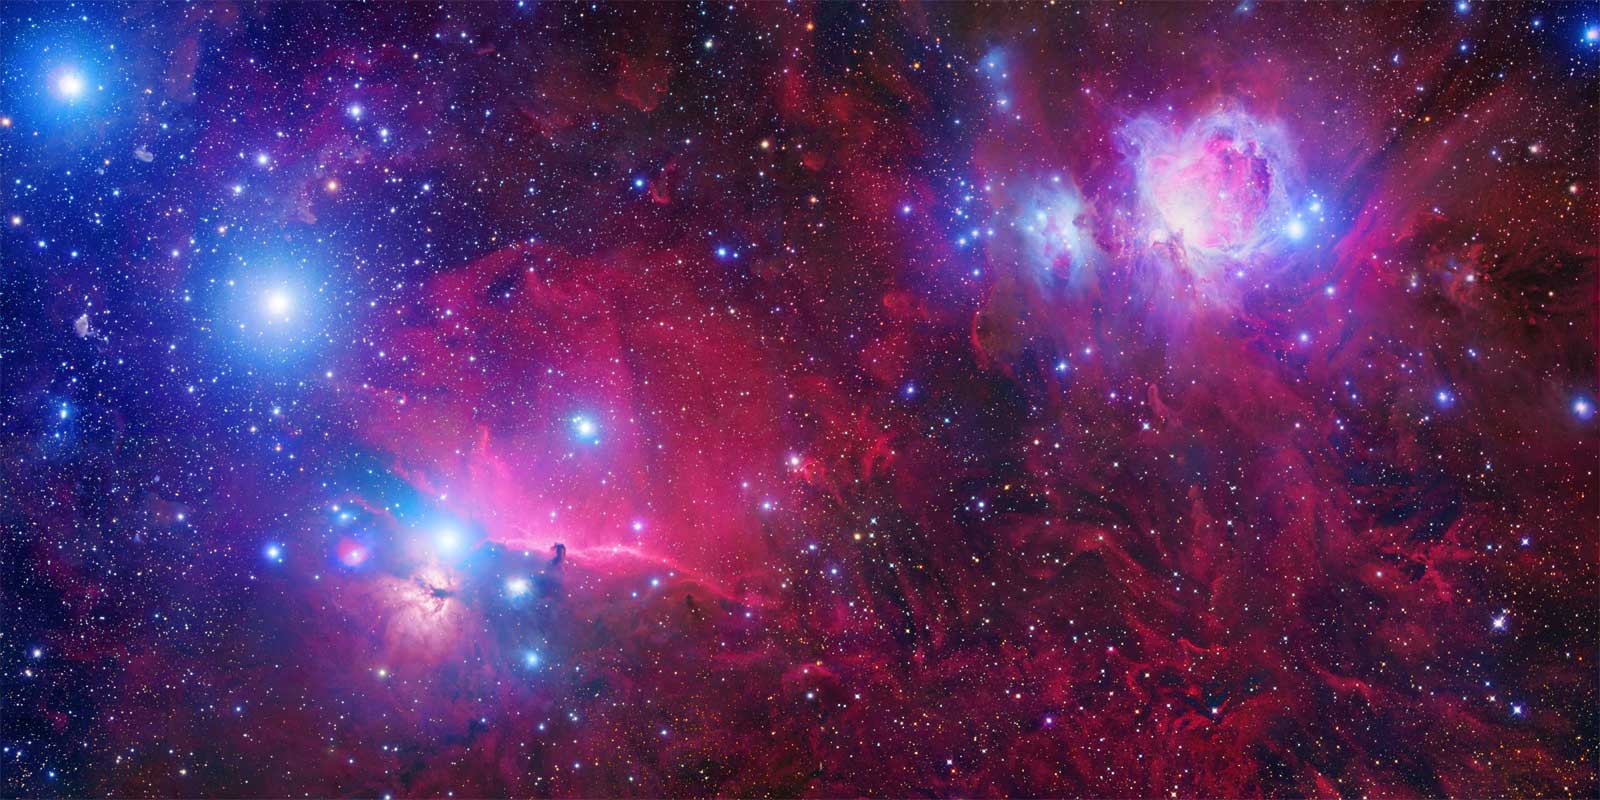 Orion Deep Field Deepfield | Robert Gendler | M42 | Laboratorio de imágenes del cielo